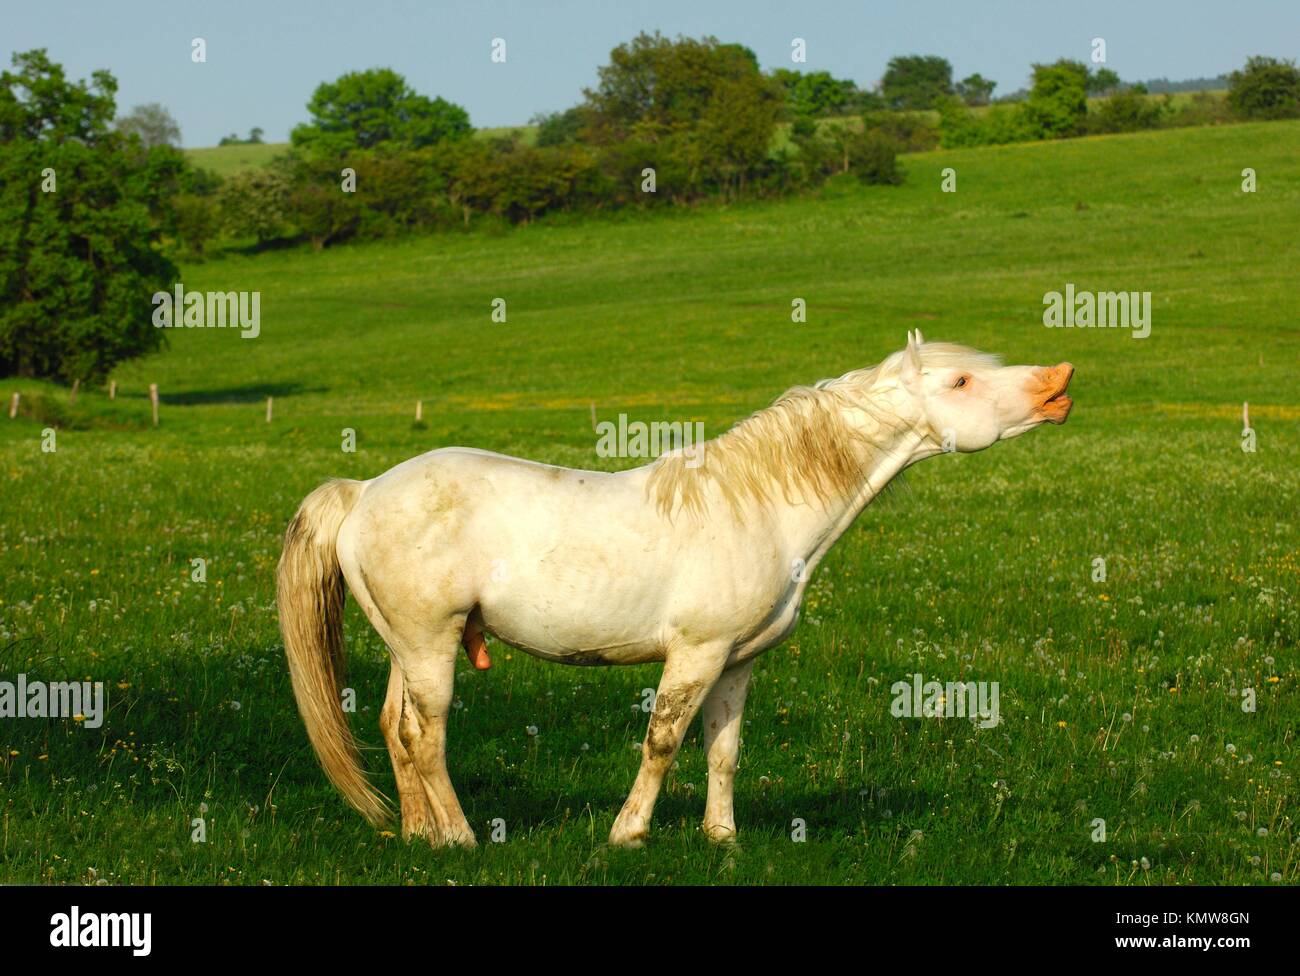 Hanoverian stallion, gray horse, in flehmen position Stock Photo